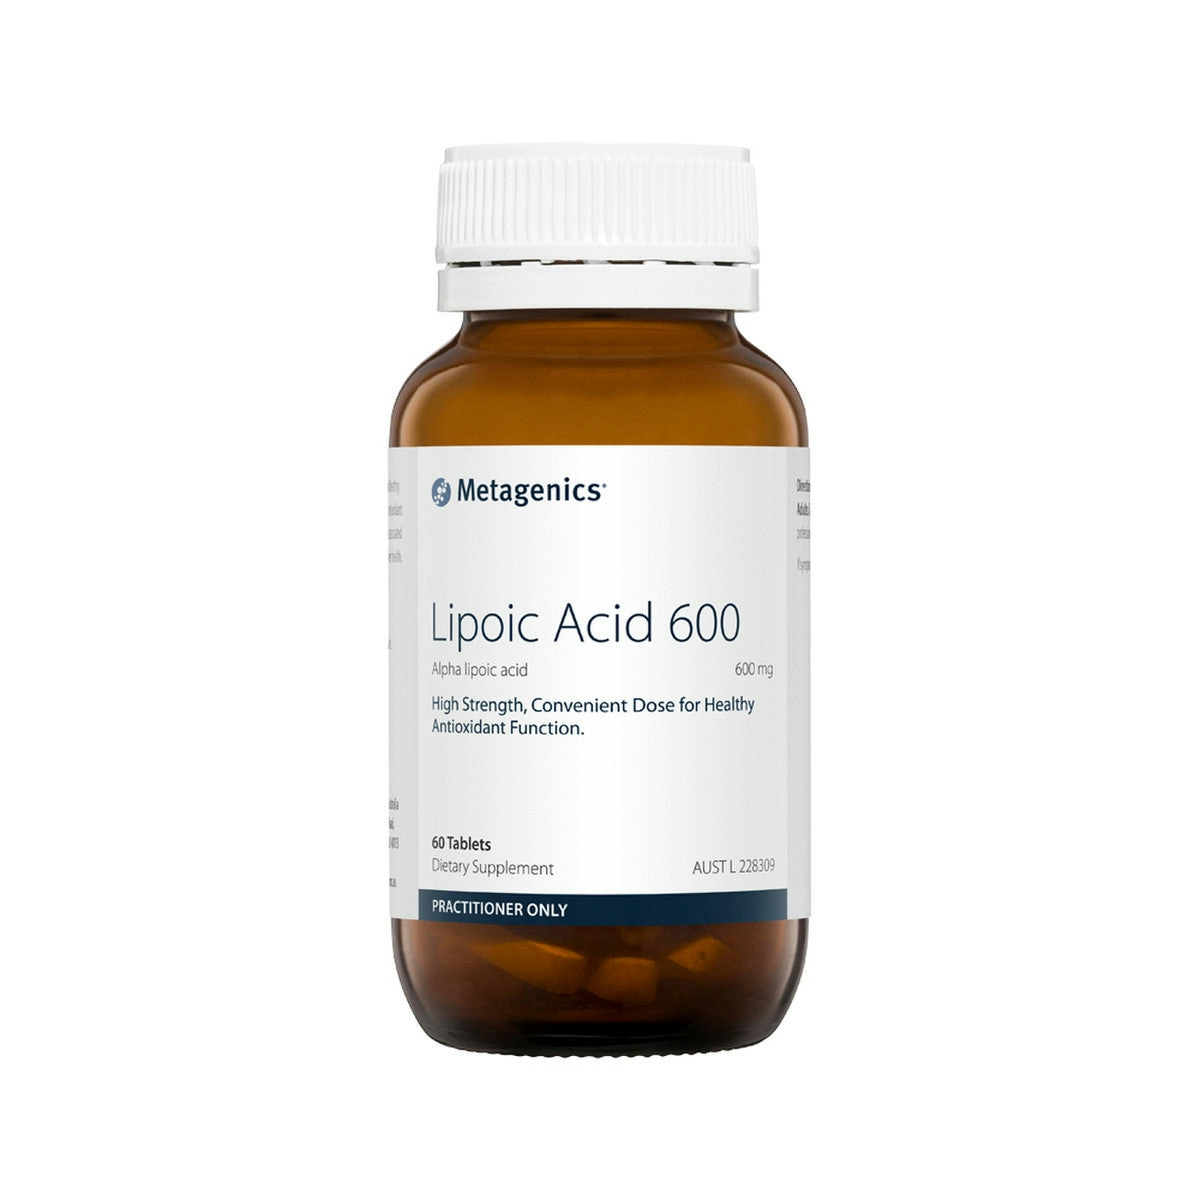 image of Metagenics Lipoic Acid 600 60t on white background